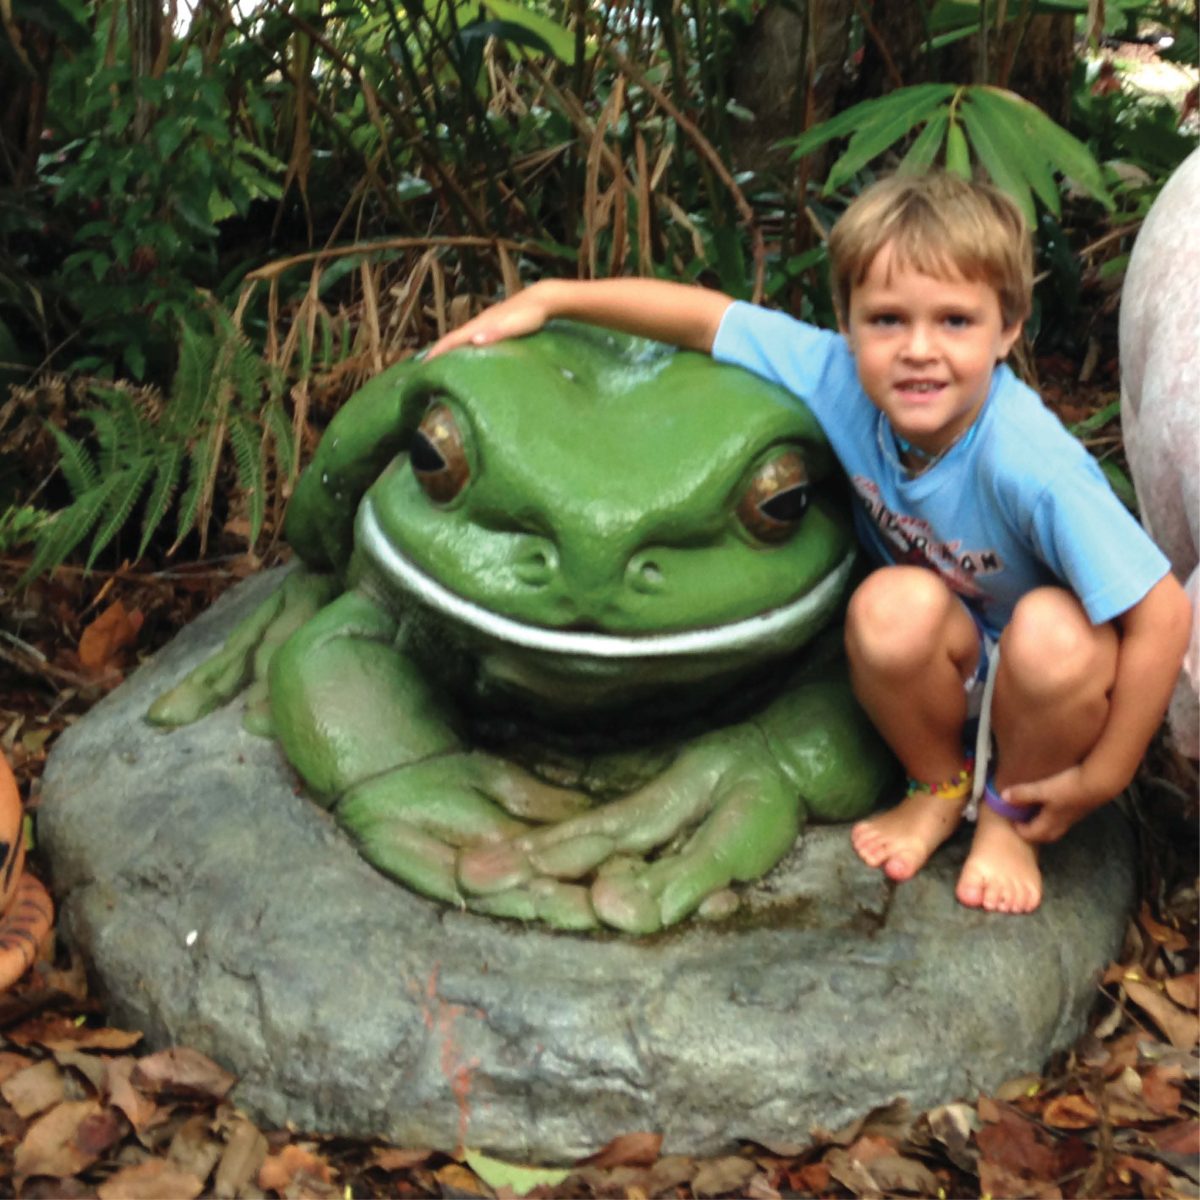 Giant Green Tree Frog On Rock Sculptures In Australia